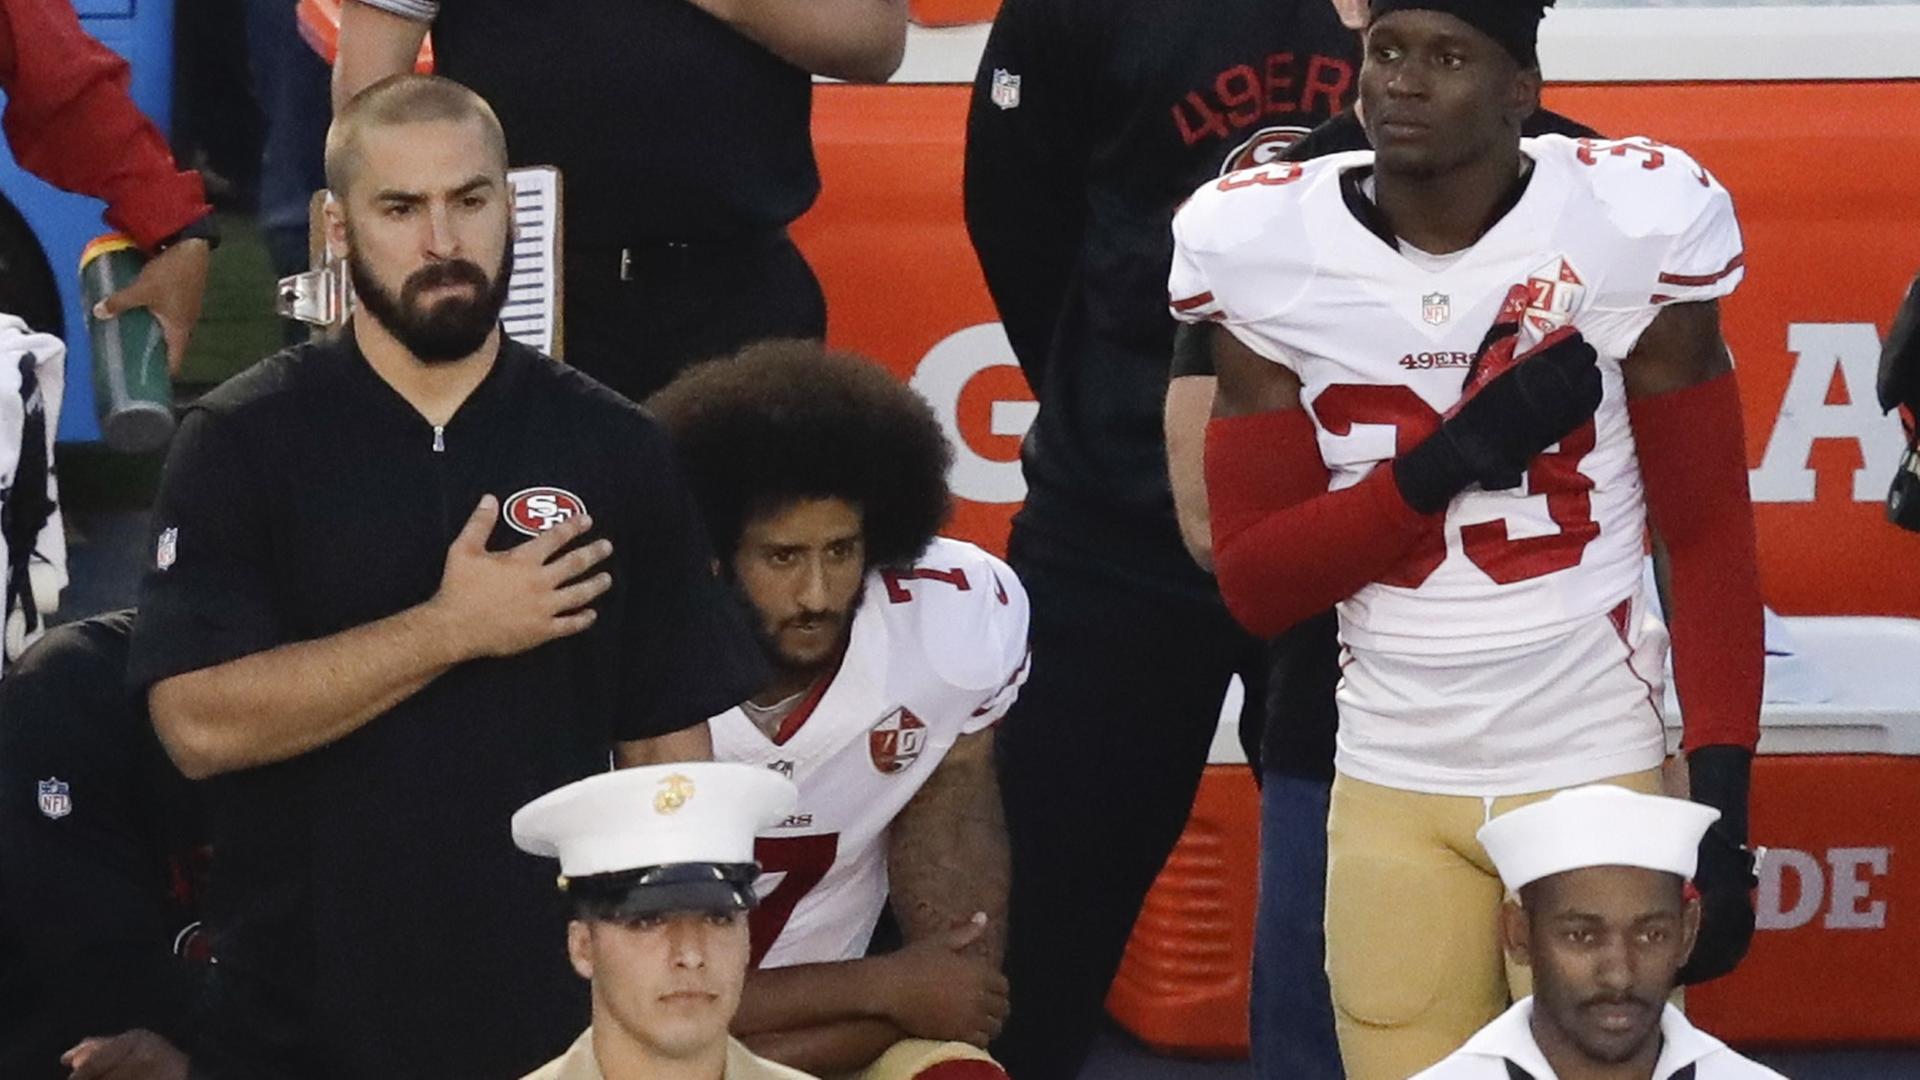 Der Quarterback der San Francisco 49ers, Colin Kaepernick, kniet während der Nationalhymne.